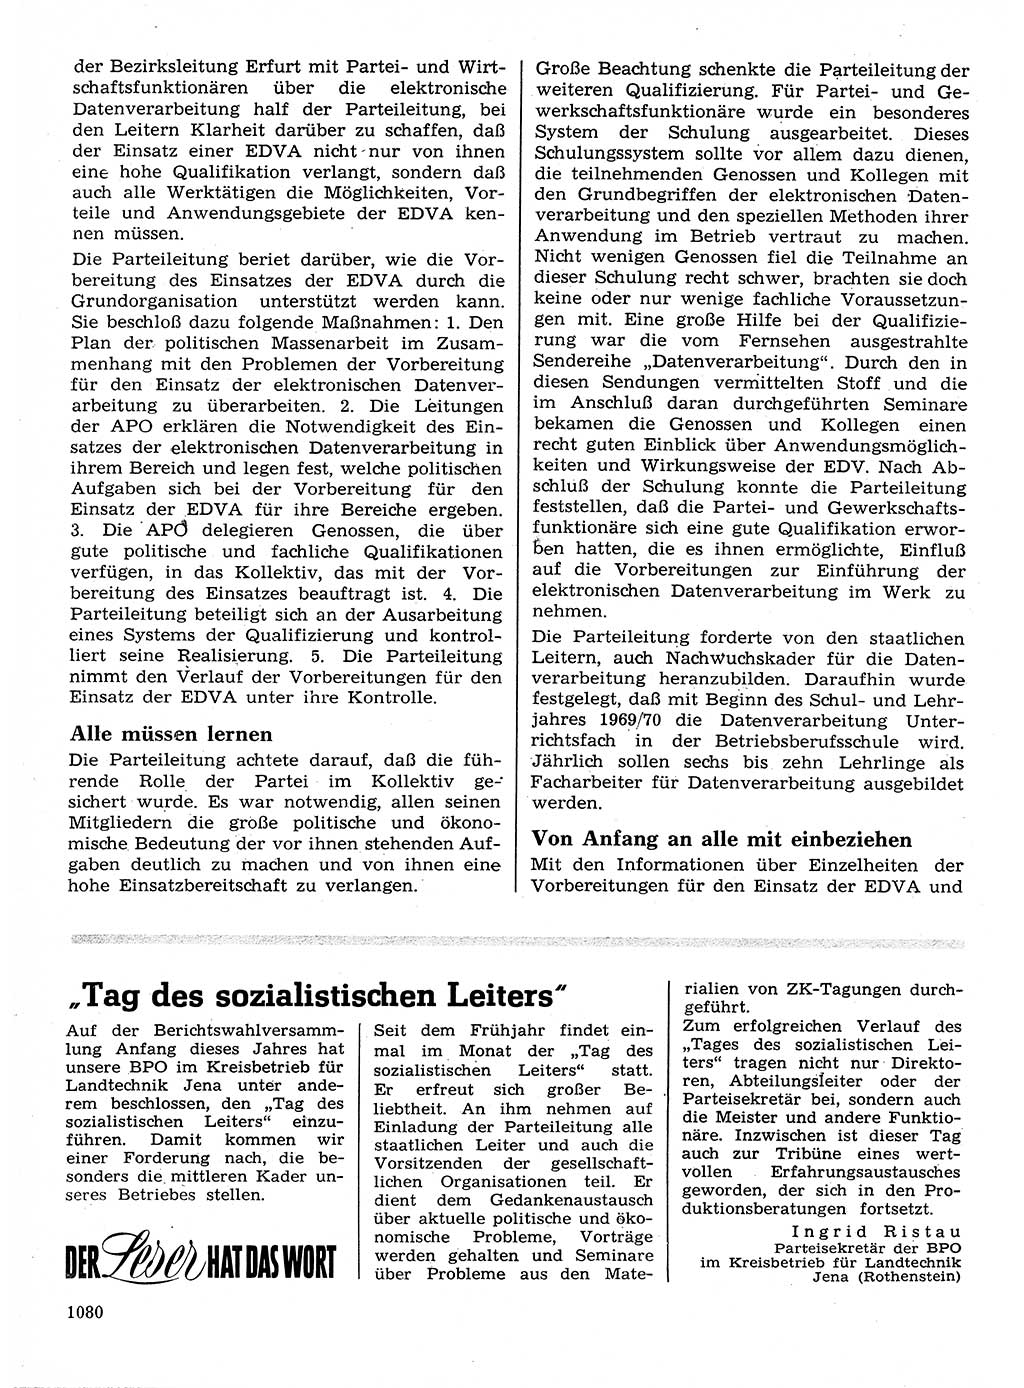 Neuer Weg (NW), Organ des Zentralkomitees (ZK) der SED (Sozialistische Einheitspartei Deutschlands) für Fragen des Parteilebens, 24. Jahrgang [Deutsche Demokratische Republik (DDR)] 1969, Seite 1080 (NW ZK SED DDR 1969, S. 1080)